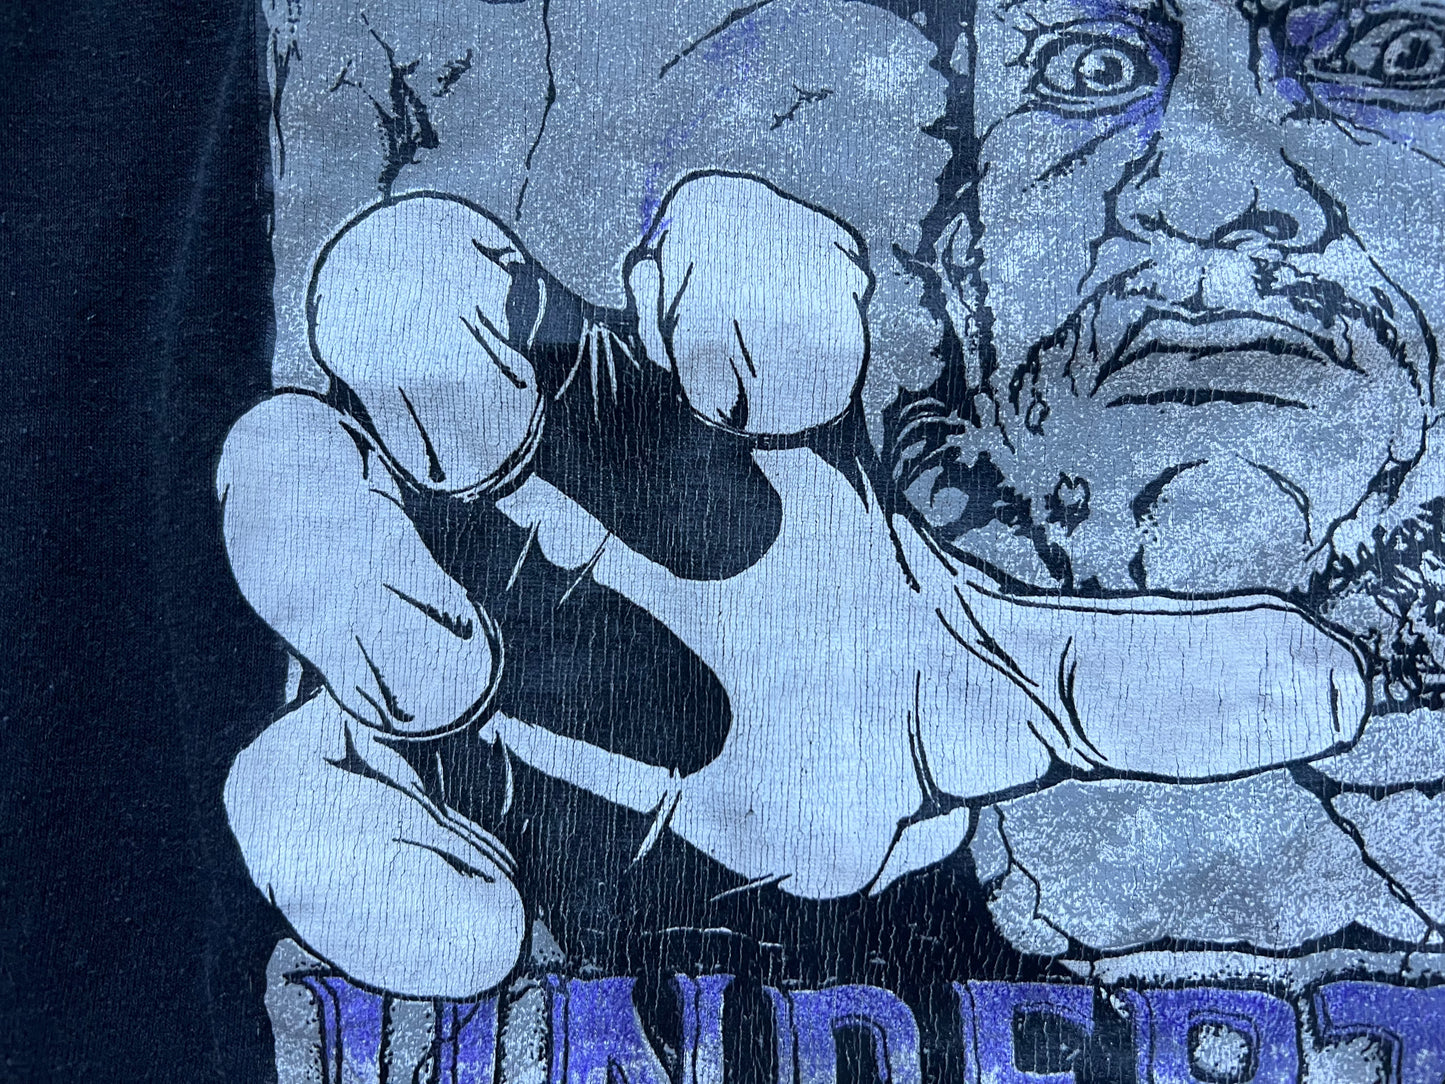 1992 WWF Undertaker 3D hand shirt